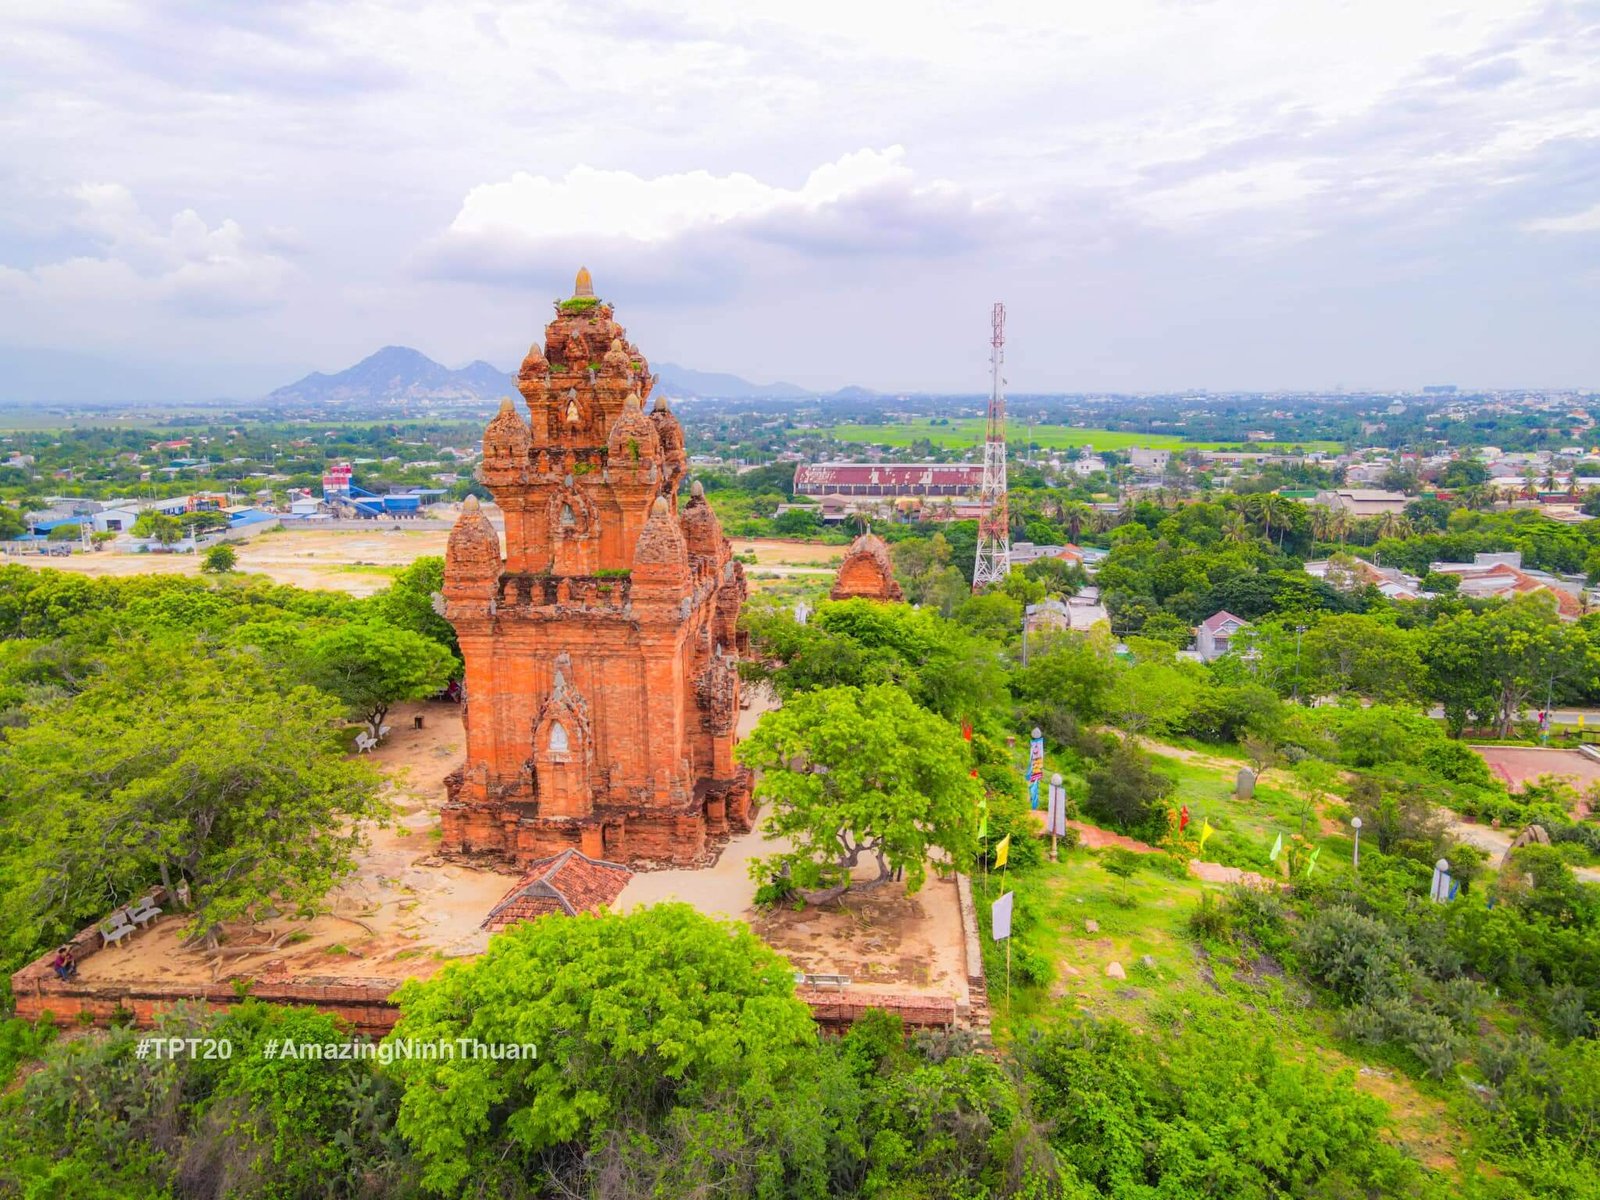 Tham quan, chiêm ngưỡng vẻ đẹp tháp Chàm 800 năm tuổi trong lịch trình du lịch Ninh Thuận 4 ngày từ Hà Nội. Ảnh: Trần Phương Trình